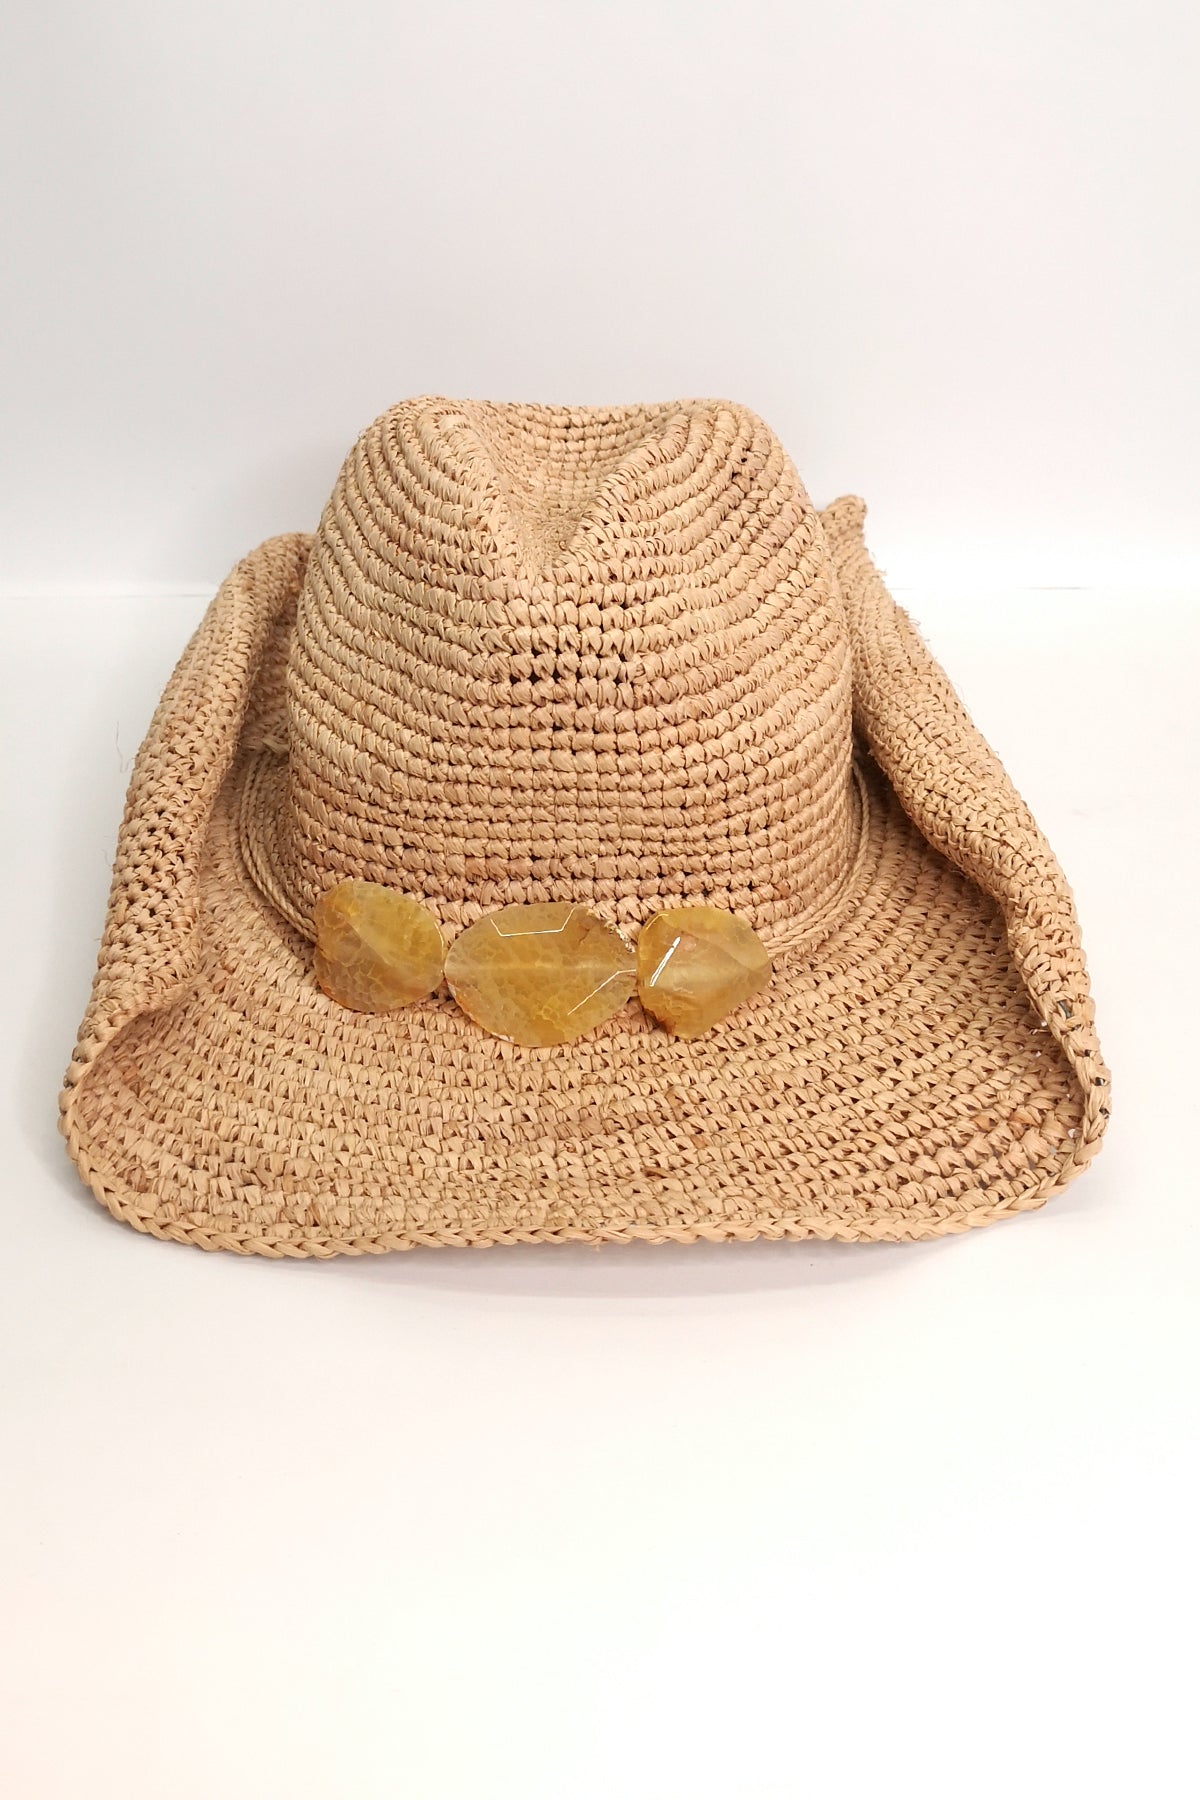 Florabella Billie Cowboy Hat Yellow